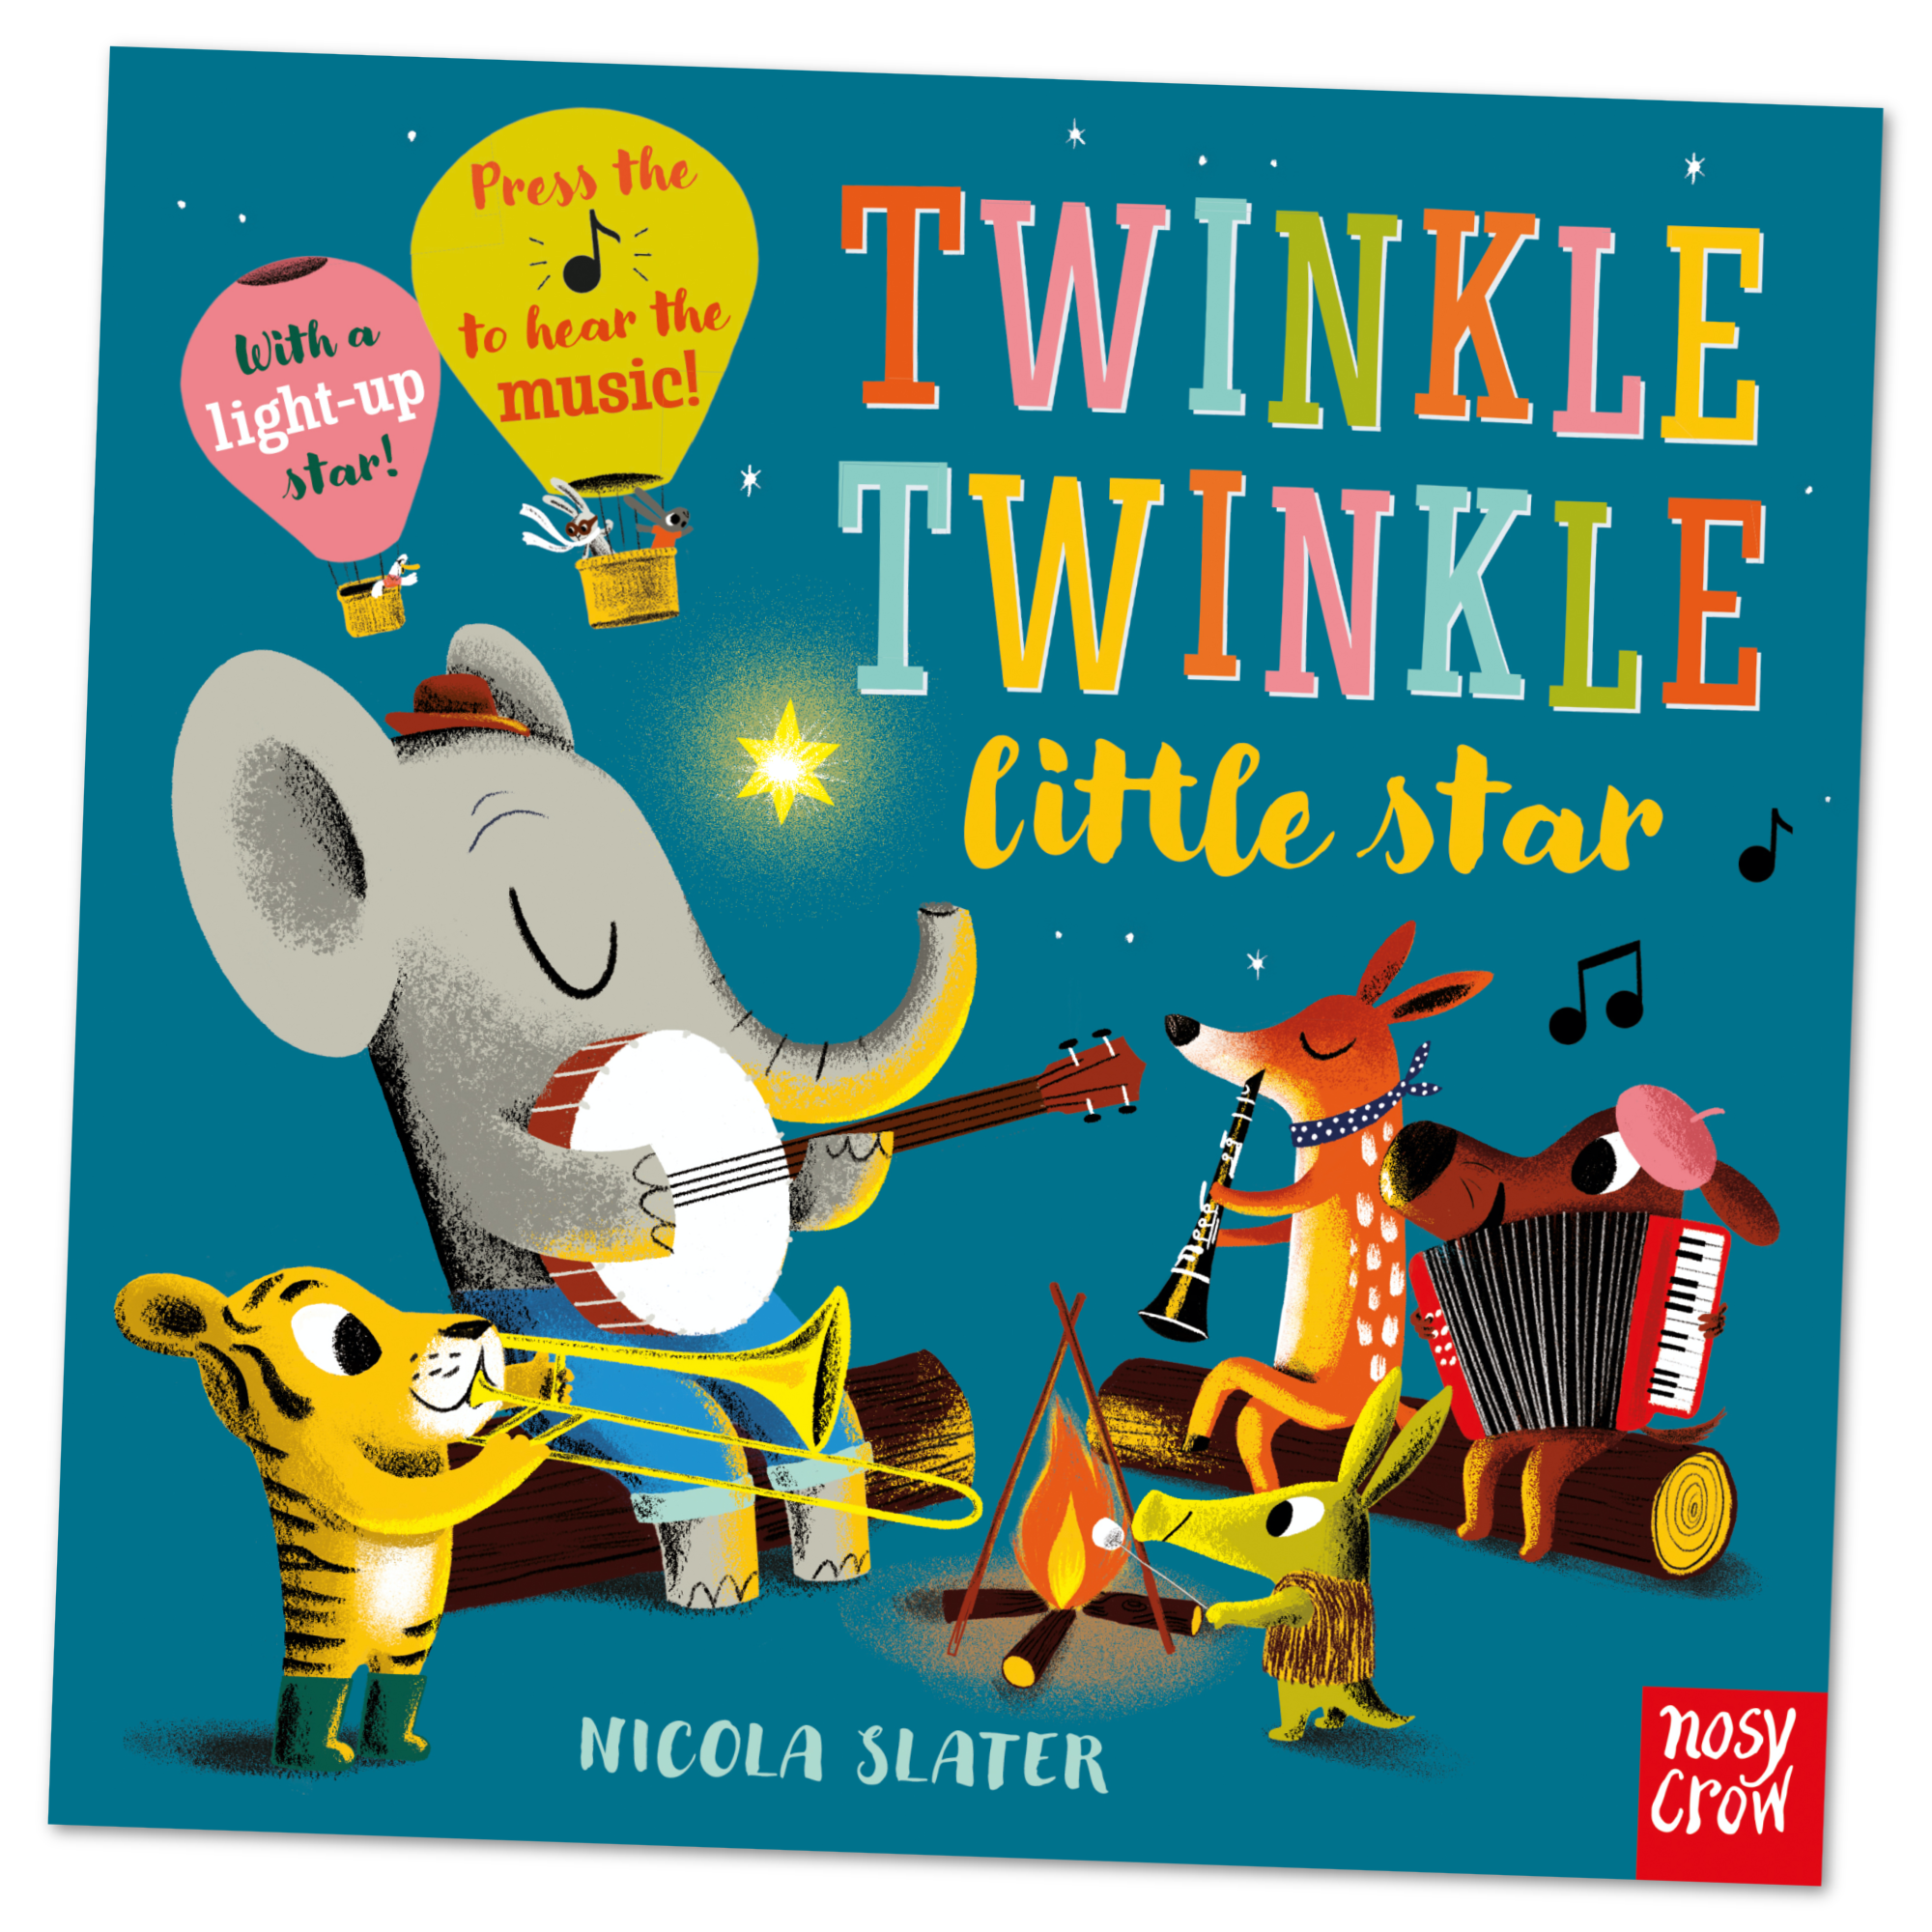 Twinkle Twinkle Little Star - Sound Book